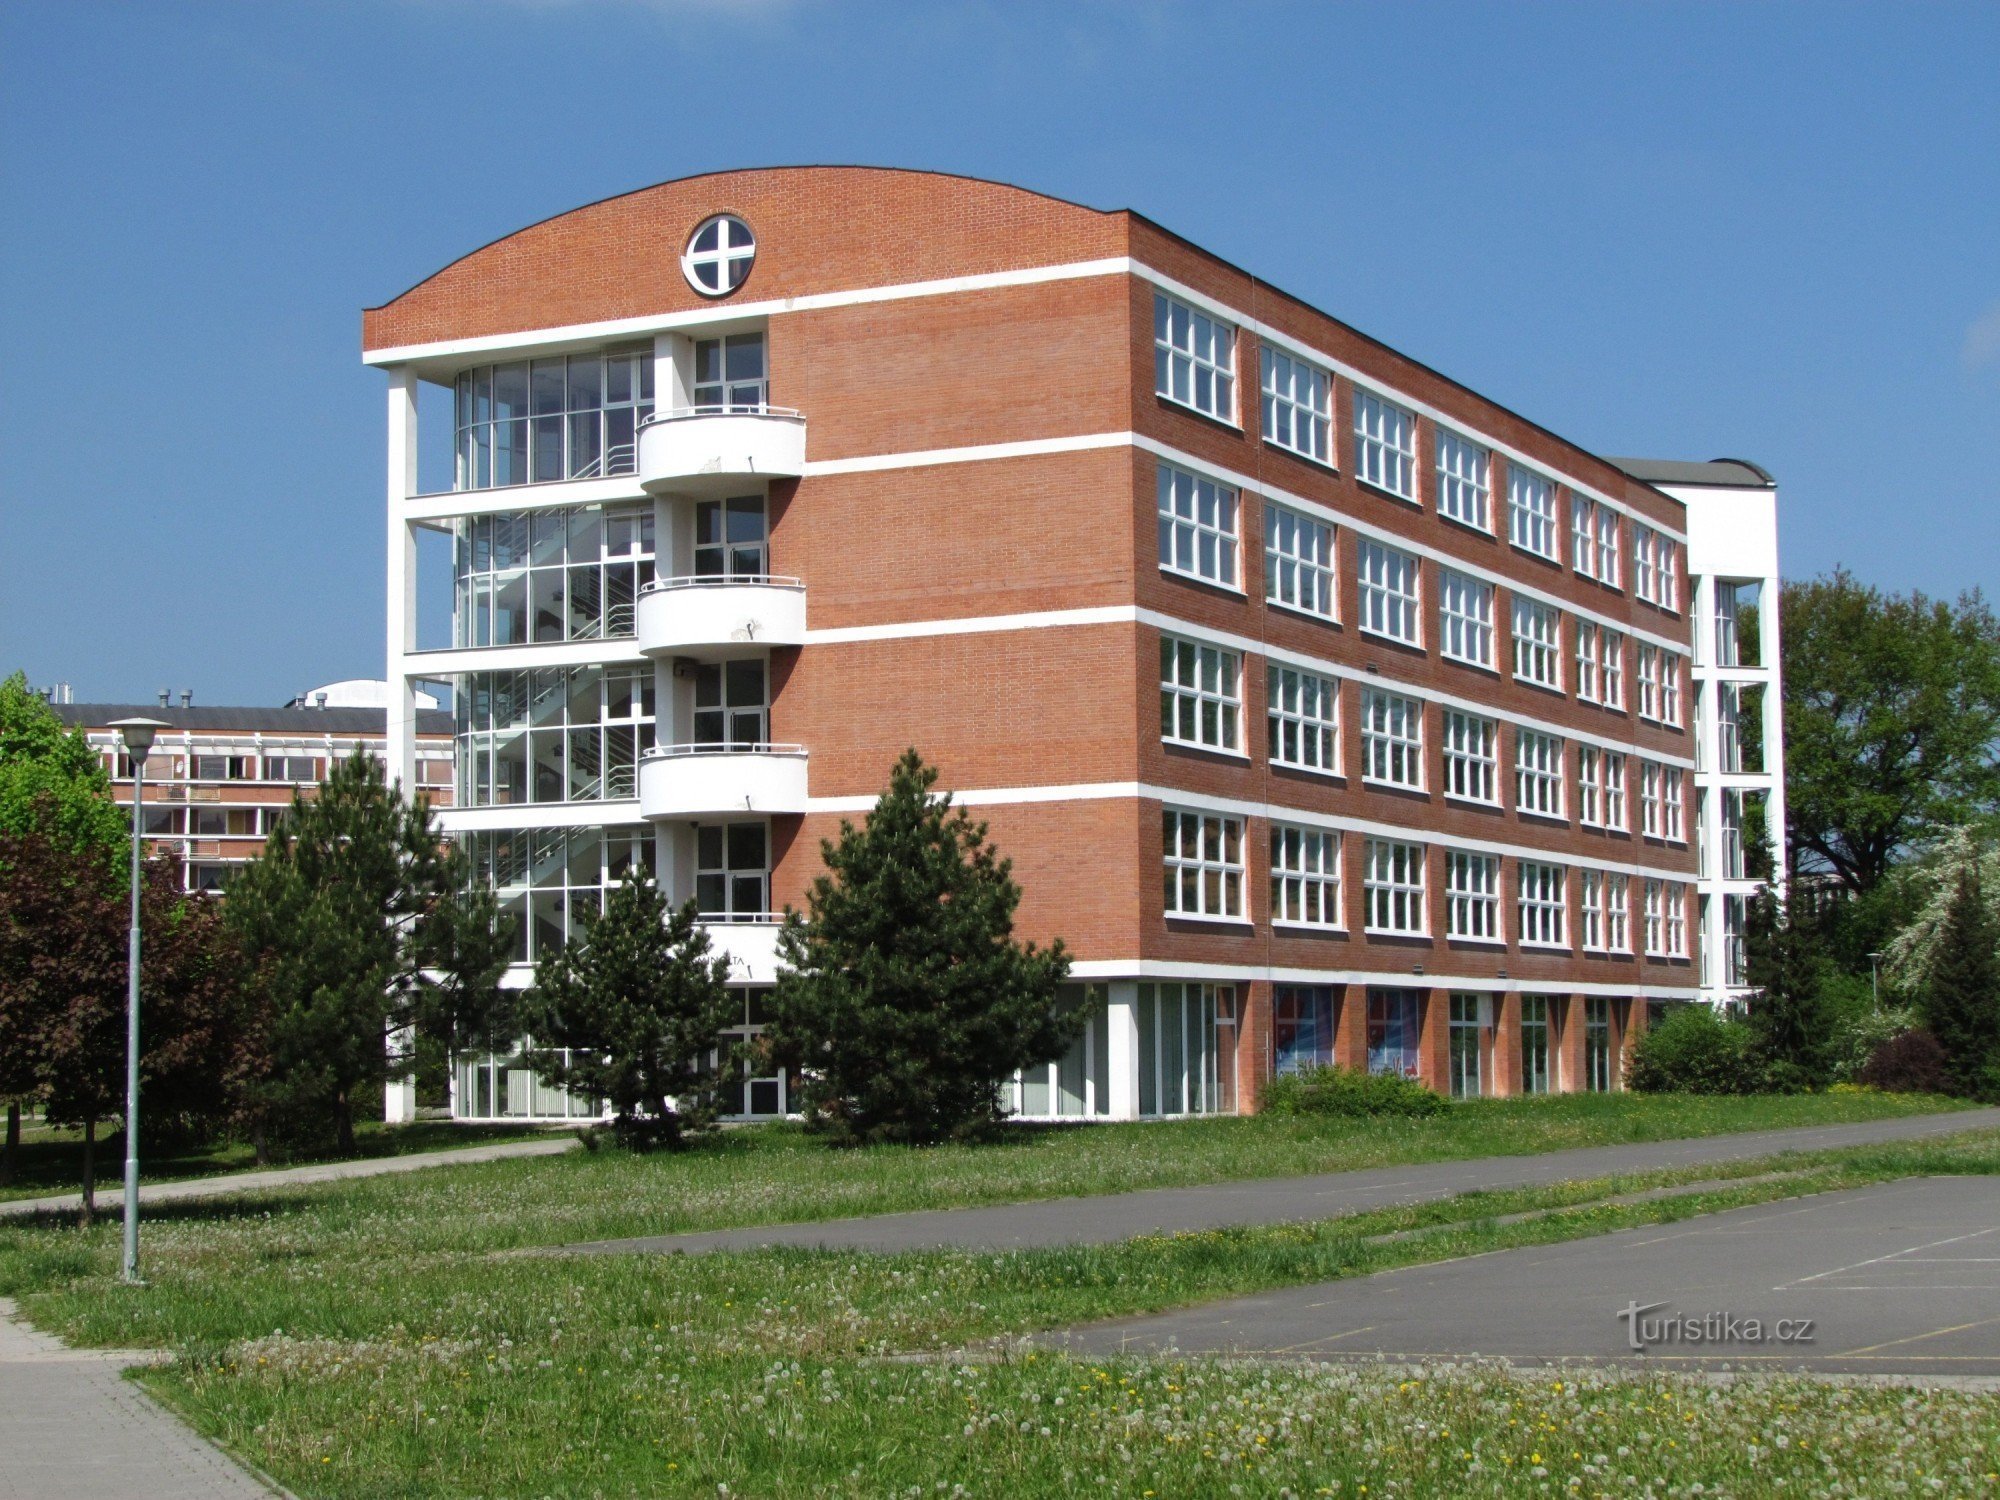 Zlín - École secondaire et supérieure de la santé + Foyer pour personnes âgées